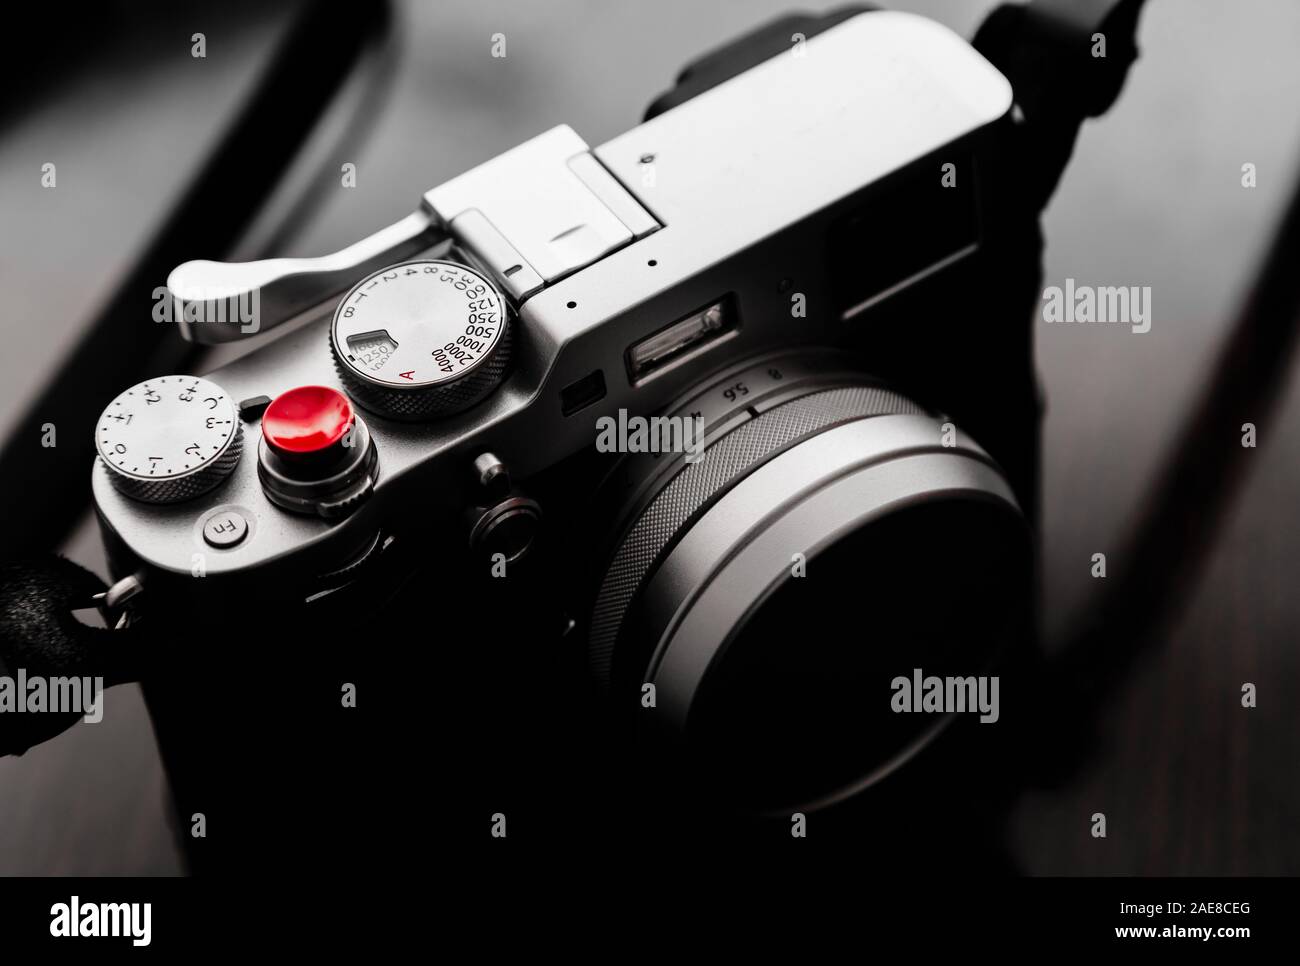 Cina,Hegang città-11 FEB 2018: Fujifilm X100F, una generazione finale di Fujifilm X100-Serie fotocamera mirrorless Foto Stock